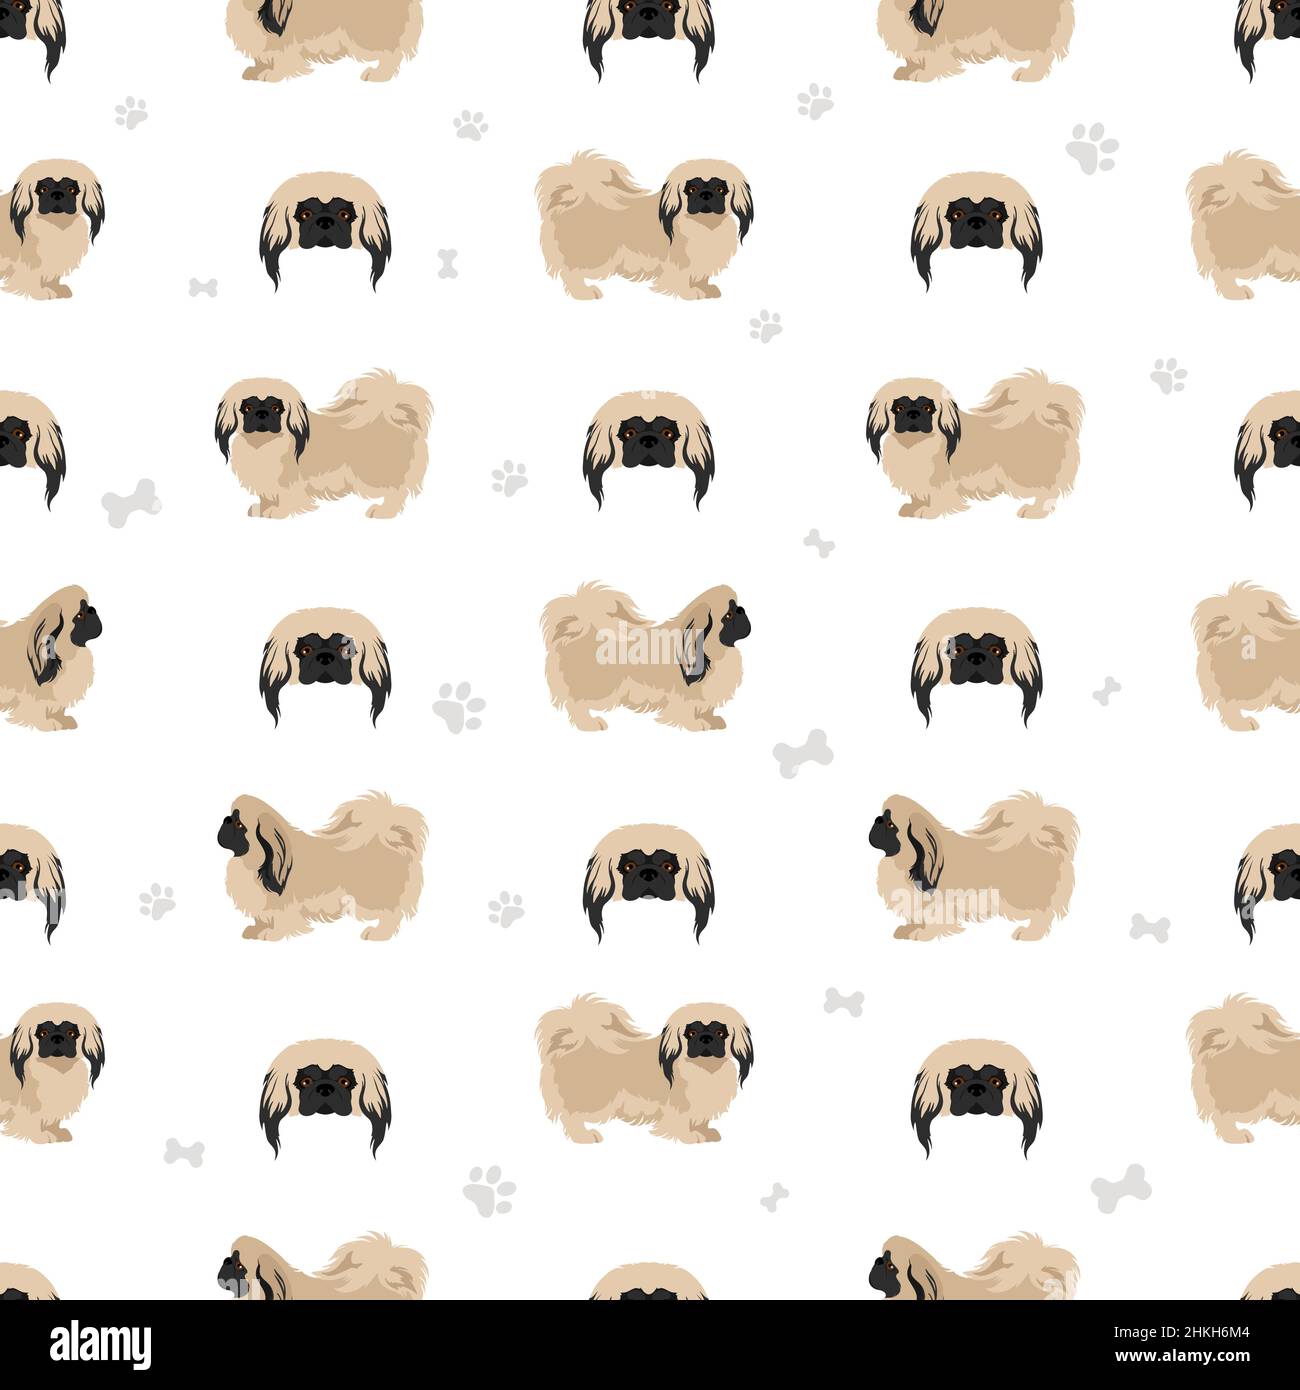 Pekingese Hund nahtlose Muster. Verschiedene Posen, Fellfarben eingestellt. Vektorgrafik Stock Vektor